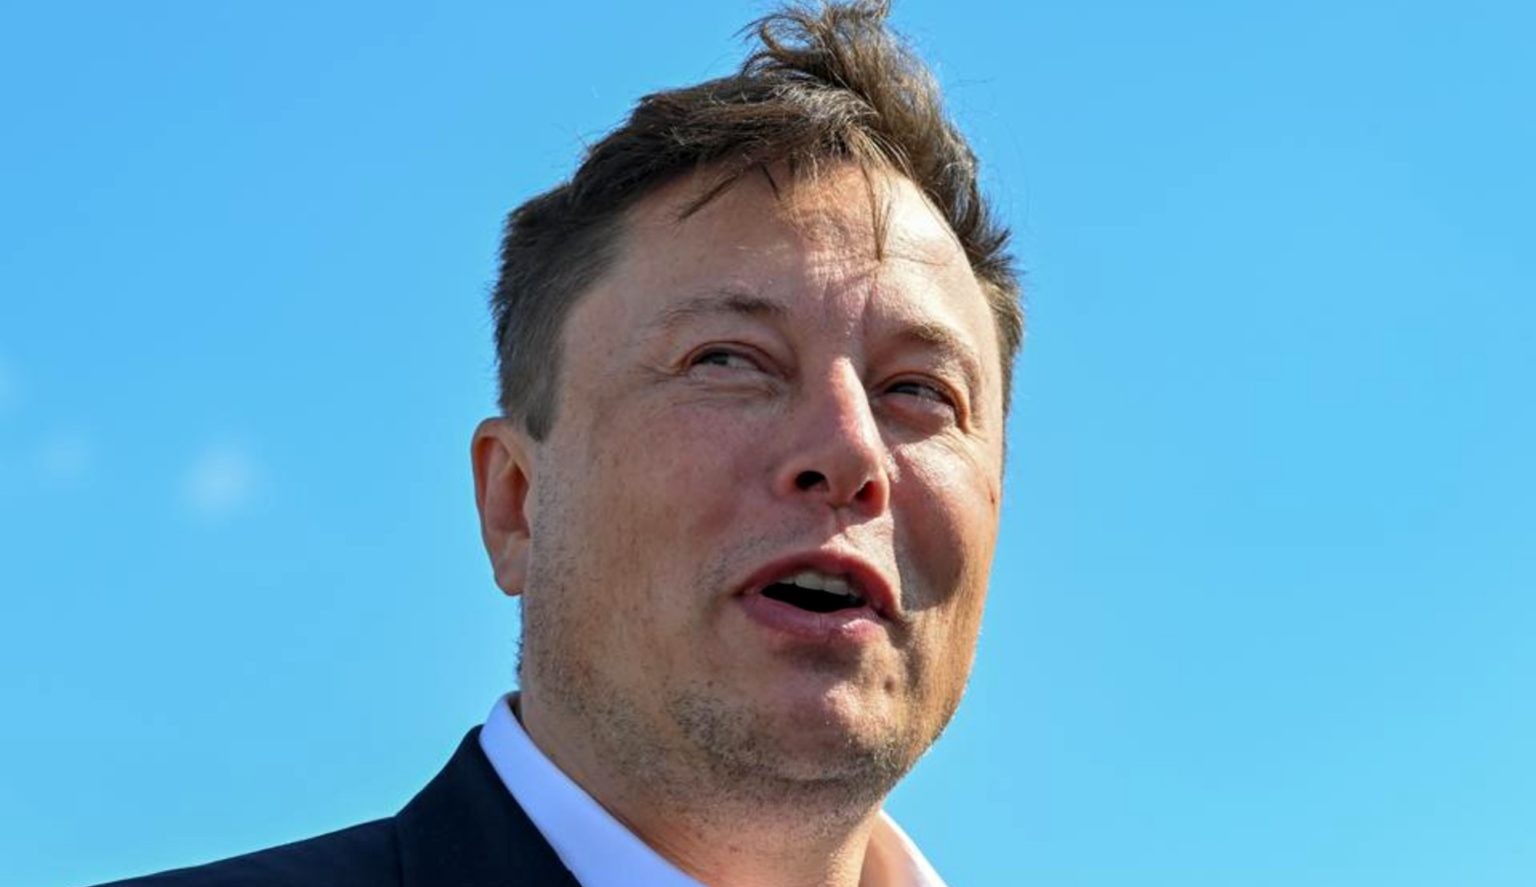 Elon Musk dá ultimato aos funcionários: 'Retornam ao trabalho ou vão embora' Lorena Bueri